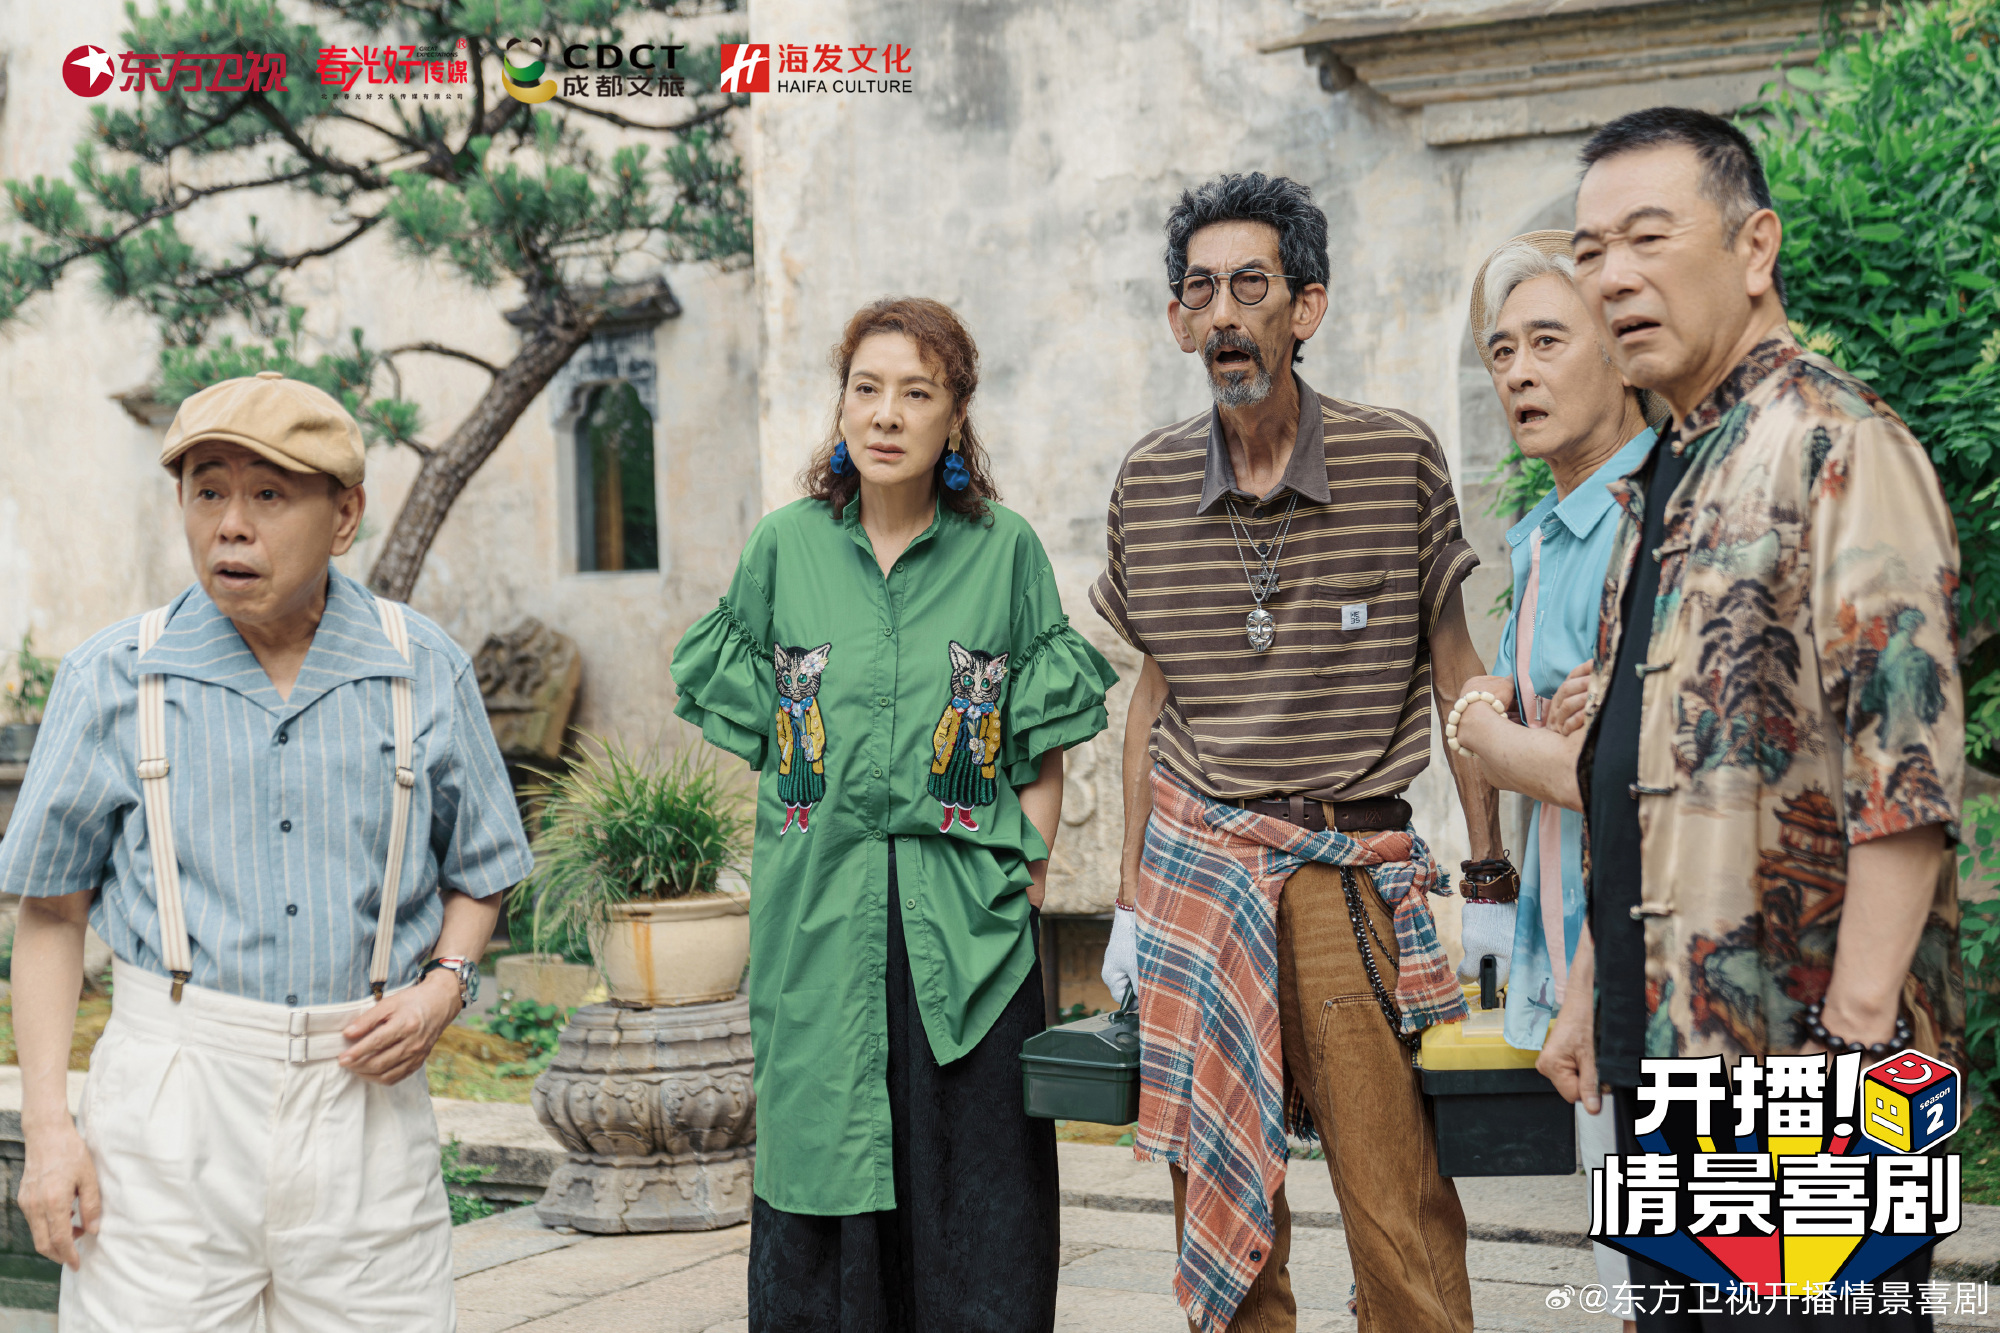 《一起养老吧》剧照，主演潘长江、李萍、车保罗、任洛敏、张晨光。